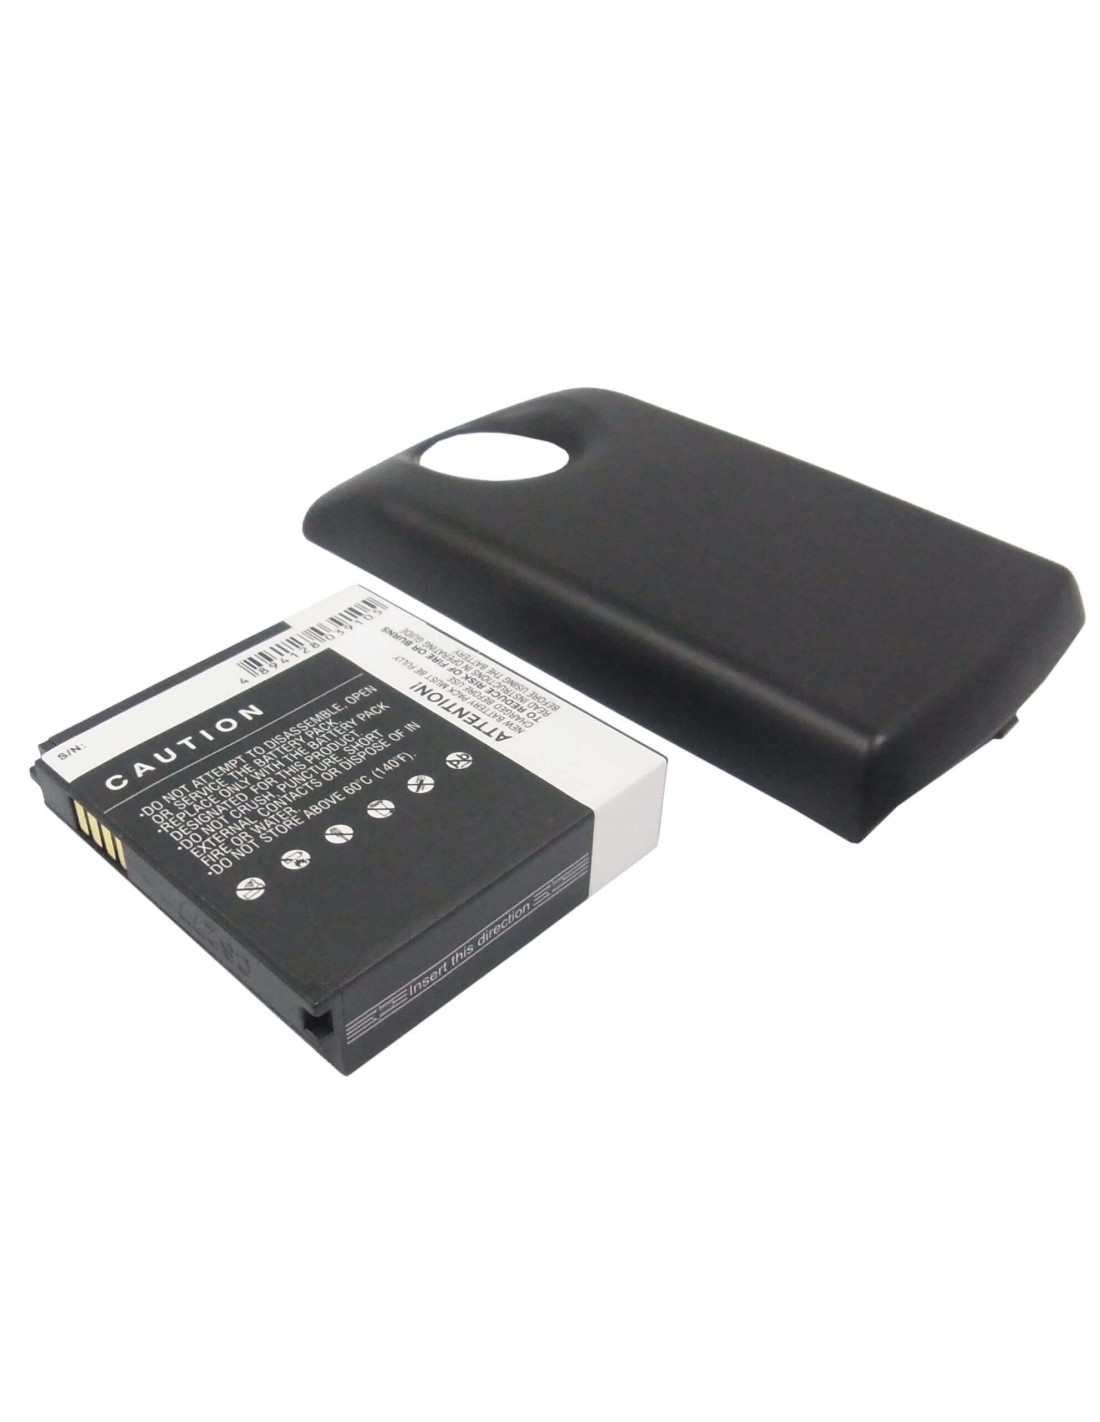 Battery for LG Optimus 7, E900 3.7V, 2400mAh - 8.88Wh